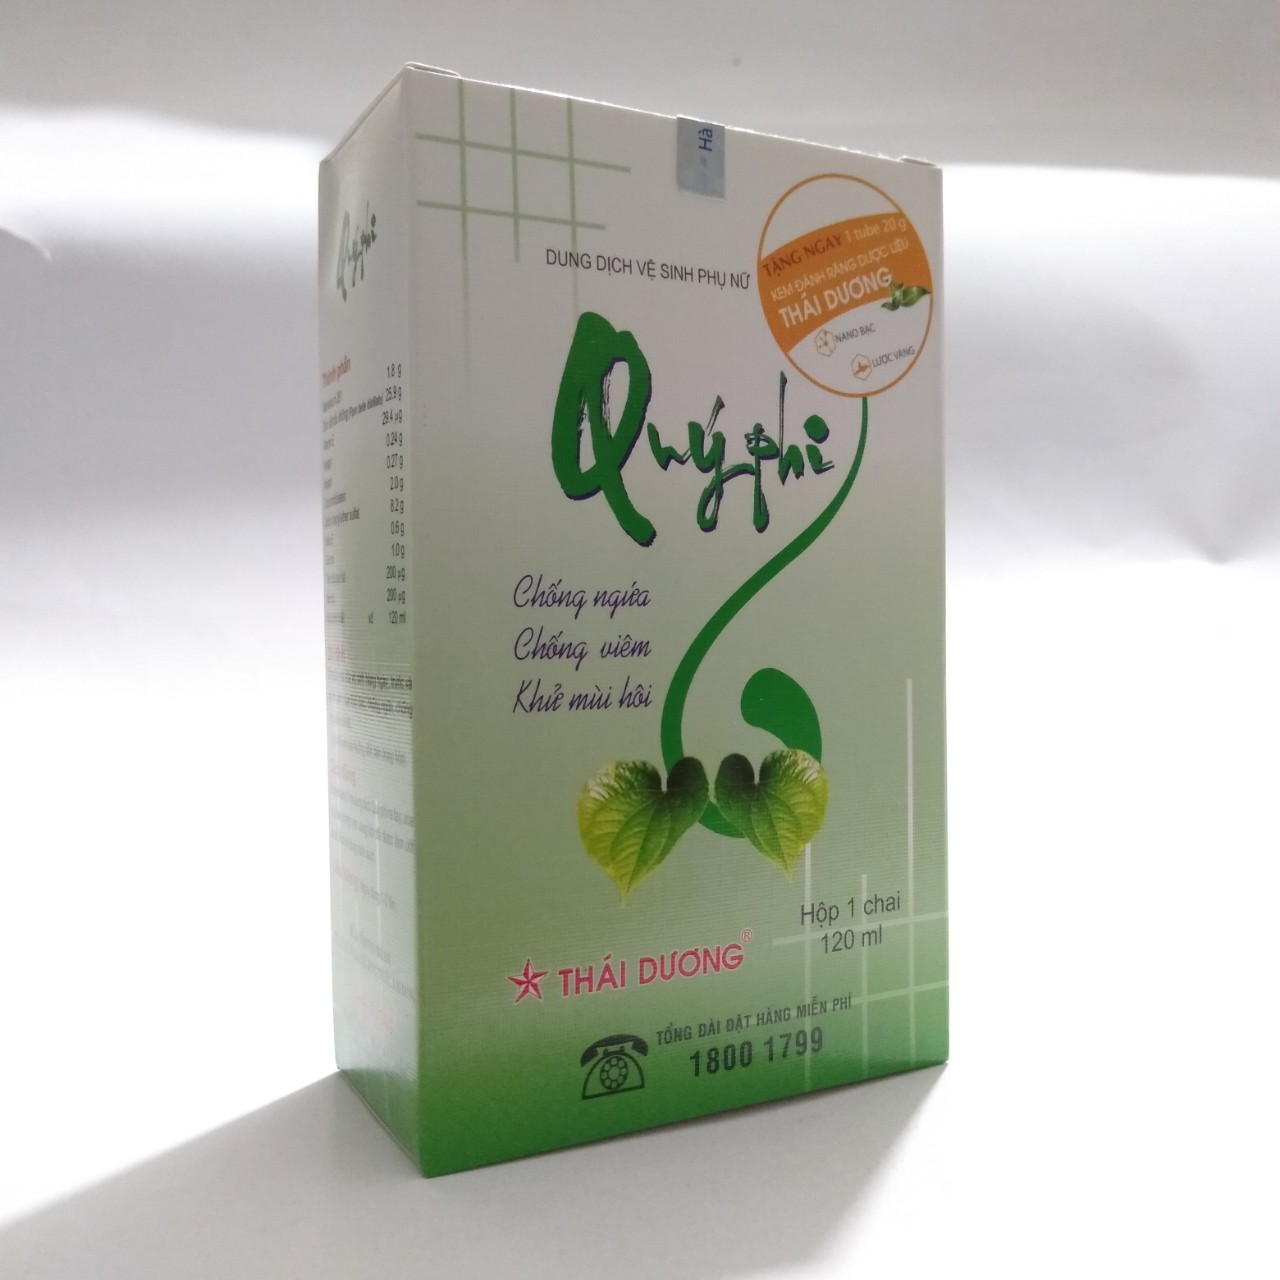 Bộ 5 chai dung dịch vệ sinh phụ nữ QUÝ PHI XANH chứa tinh chất trầu không, chống ngứa, chồng viêm, khử mùi-Chai 125ml